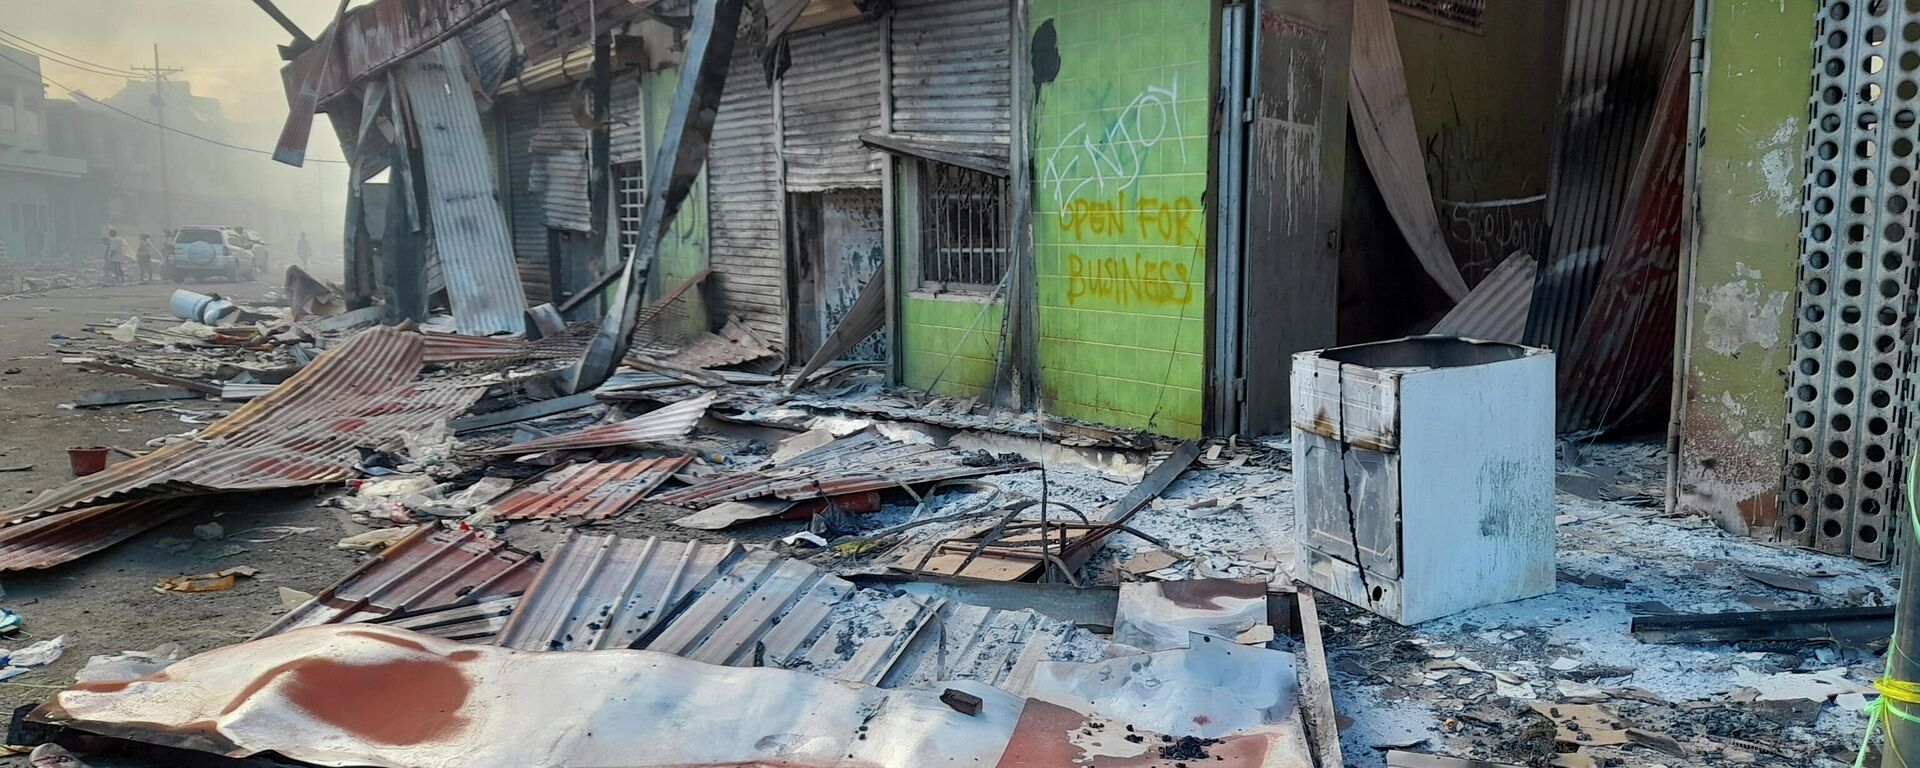 Detritos estão na rua em frente às lojas danificadas em Chinatown, Honiara, Ilhas Salomão, sexta-feira, 26 de novembro. A violência diminuiu na capital das Ilhas Salomão - Sputnik Brasil, 1920, 29.11.2021